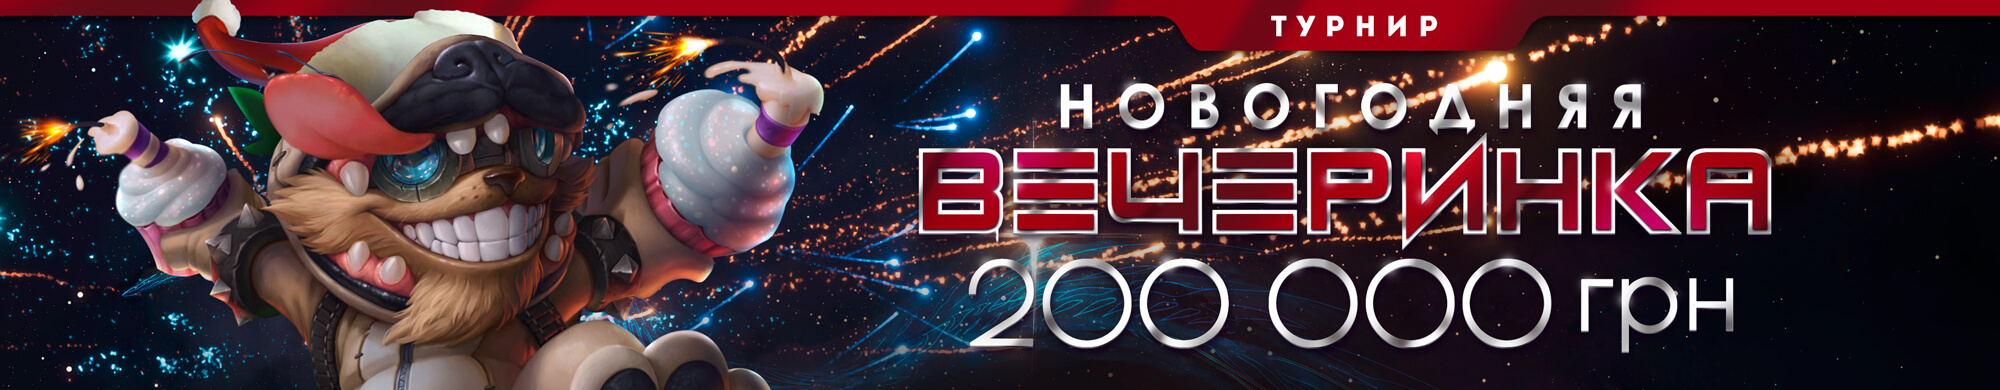 Новогодняя вечеринка - турнир гот казино Monoslot с 16 декабря по 16 января